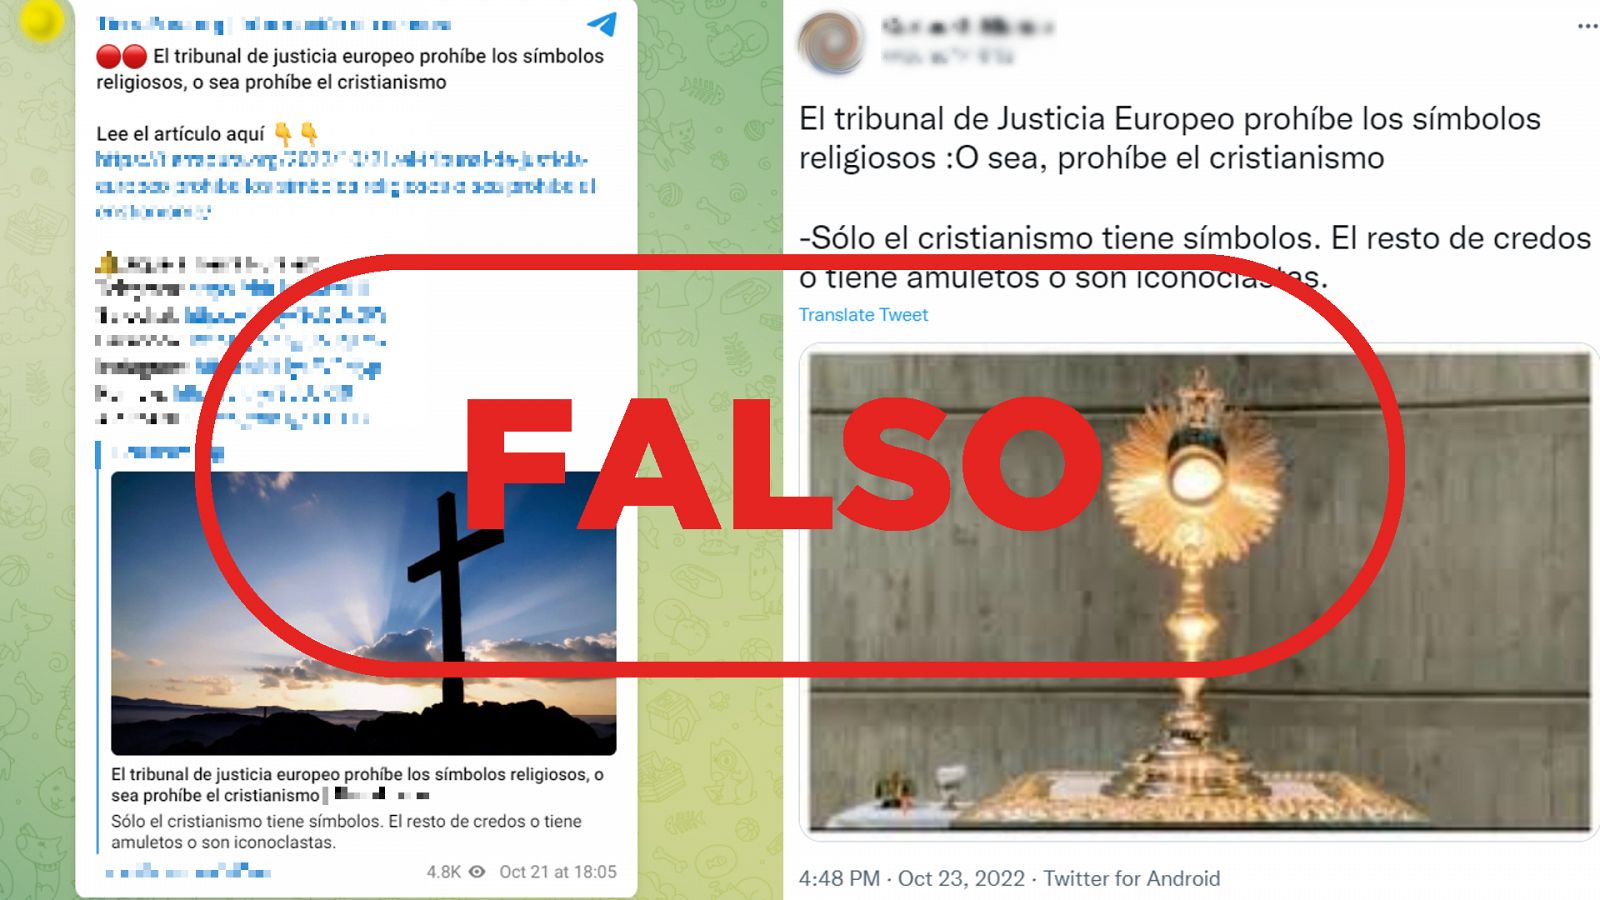 Un mensaje de Telegram y otro de Twitter que difunden la falsedad de que el Tribunal de Justicia de la UE prohíbe el cristianismo, con sello falso en rojo de VerificaRTVE